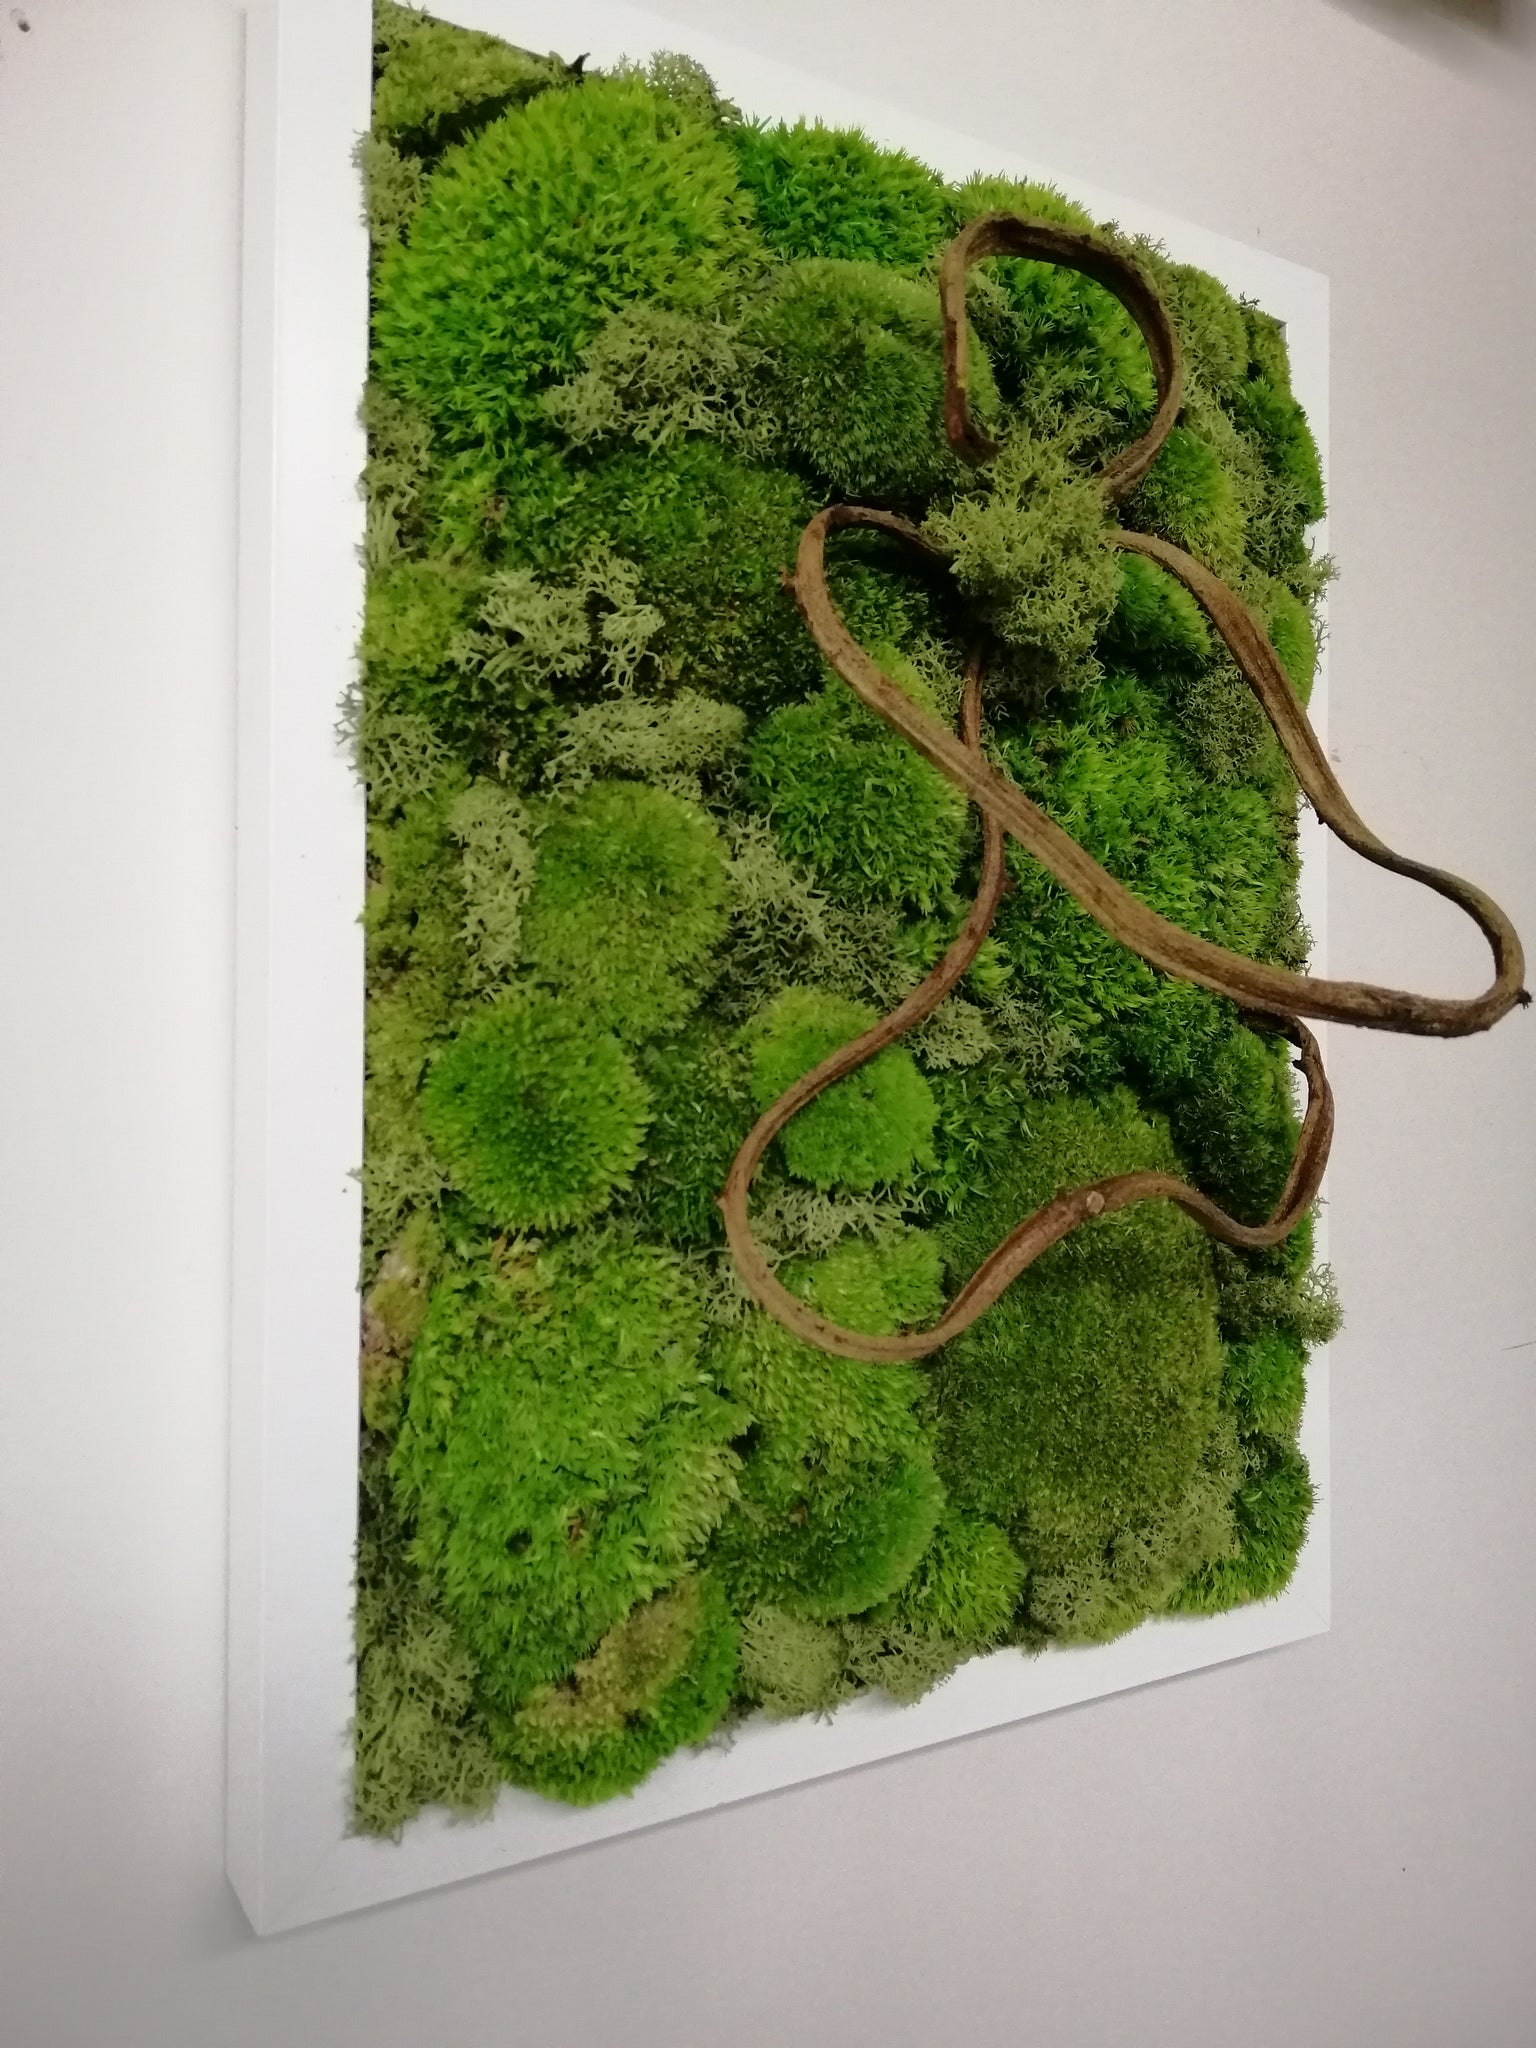 Quadri vegetali con lichene stabilizzato